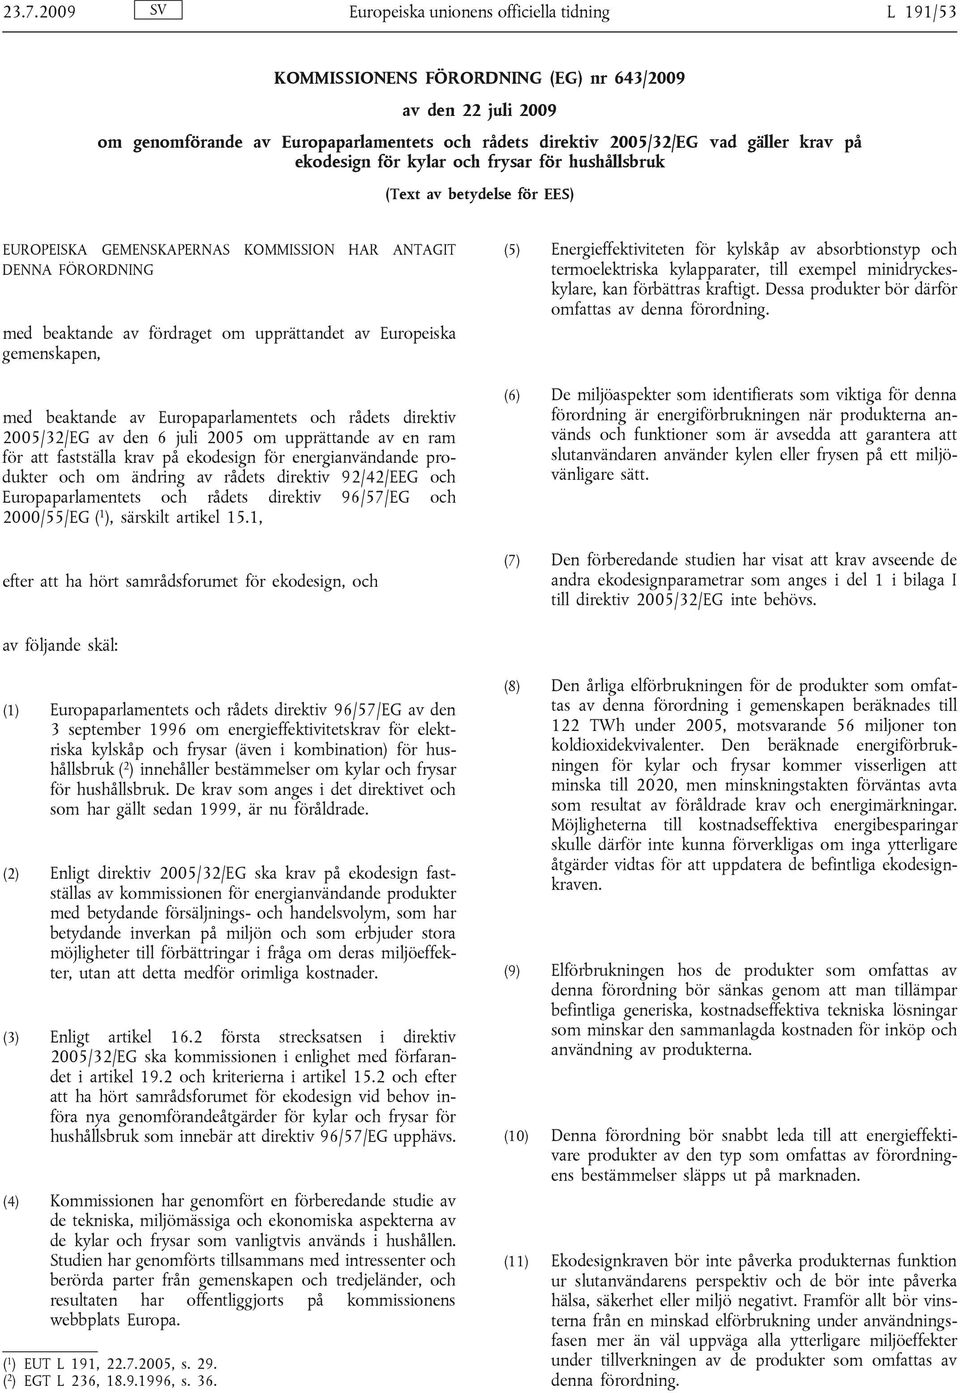 Europeiska gemenskapen, med beaktande av Europaparlamentets och rådets direktiv 2005/32/EG av den 6 juli 2005 om upprättande av en ram för att fastställa krav på ekodesign för energianvändande